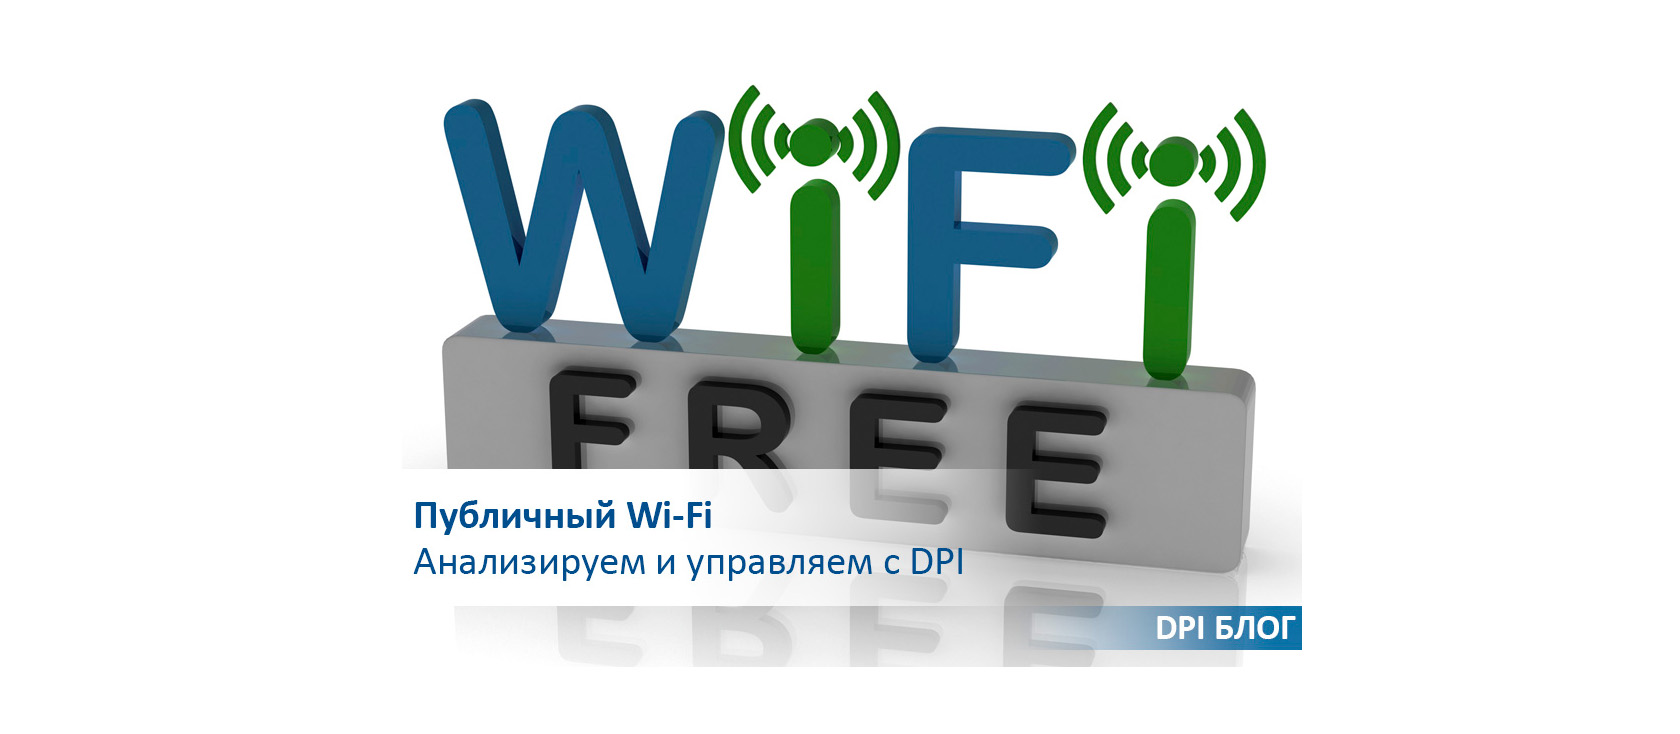 Публичный Wi-Fi. Анализируем и управляем с DPI